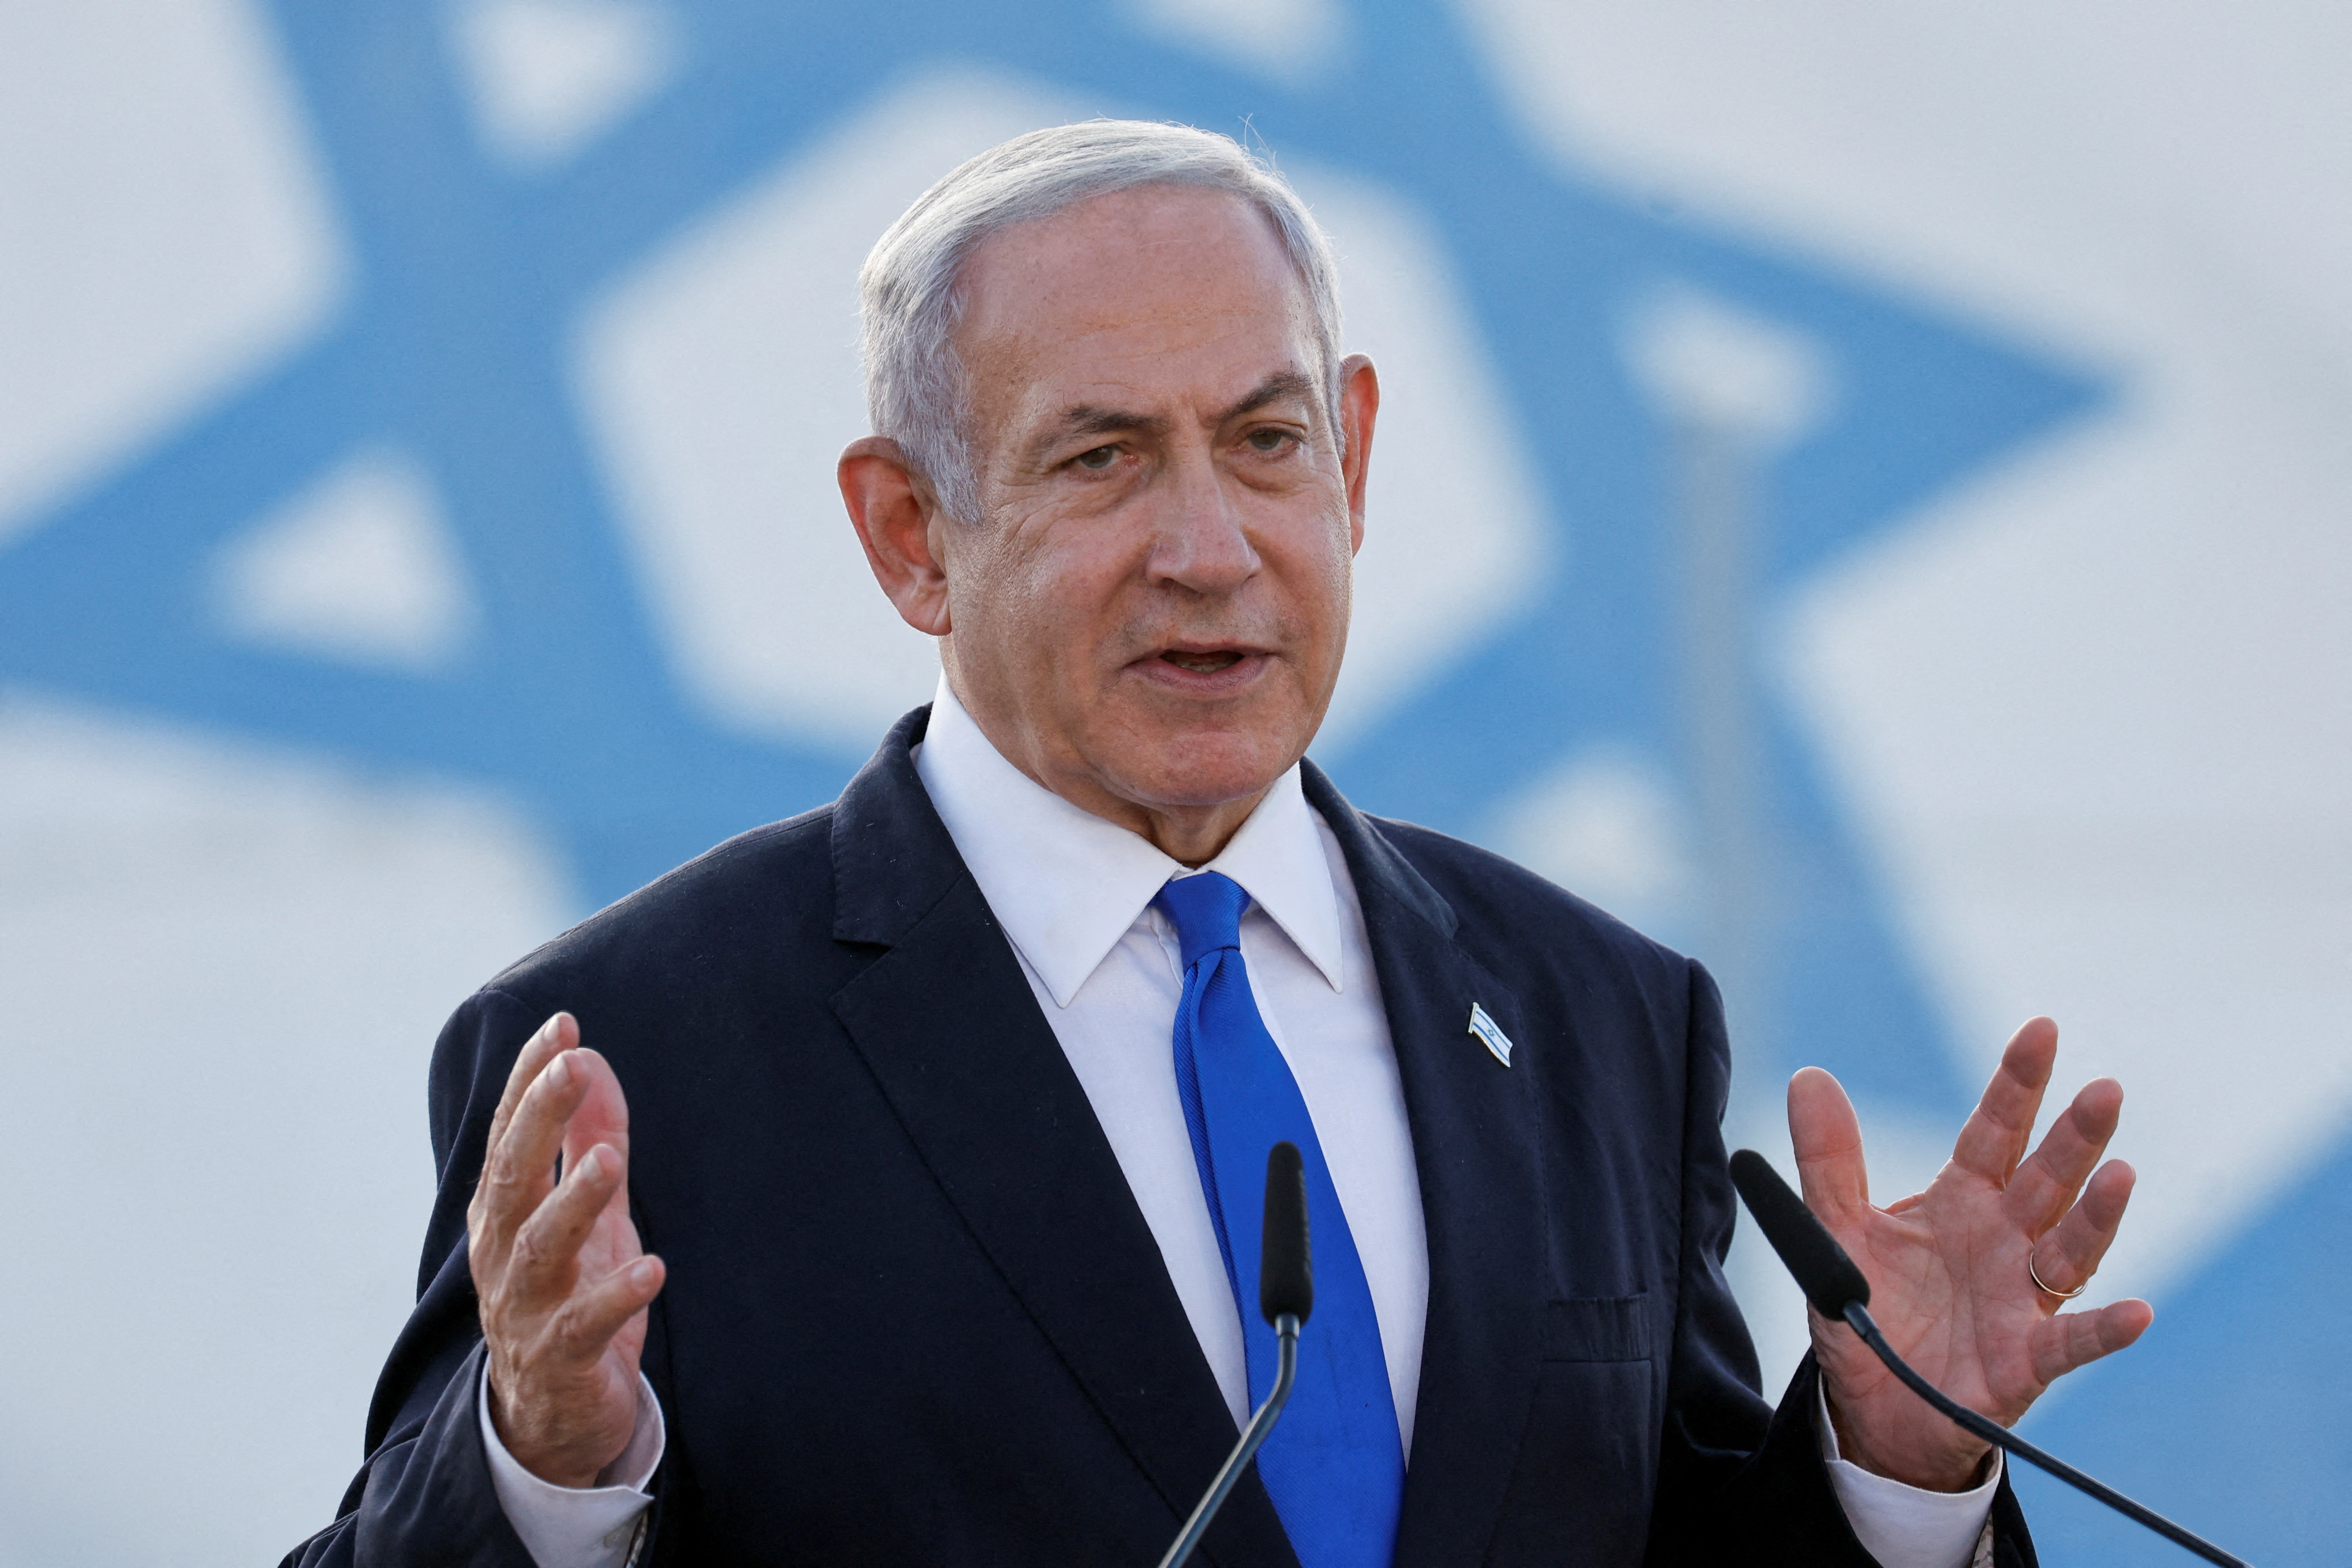 Netanyahu, doktorların ‘temiz’ açıklamasının ardından İsrail hastanesinden taburcu edildi.